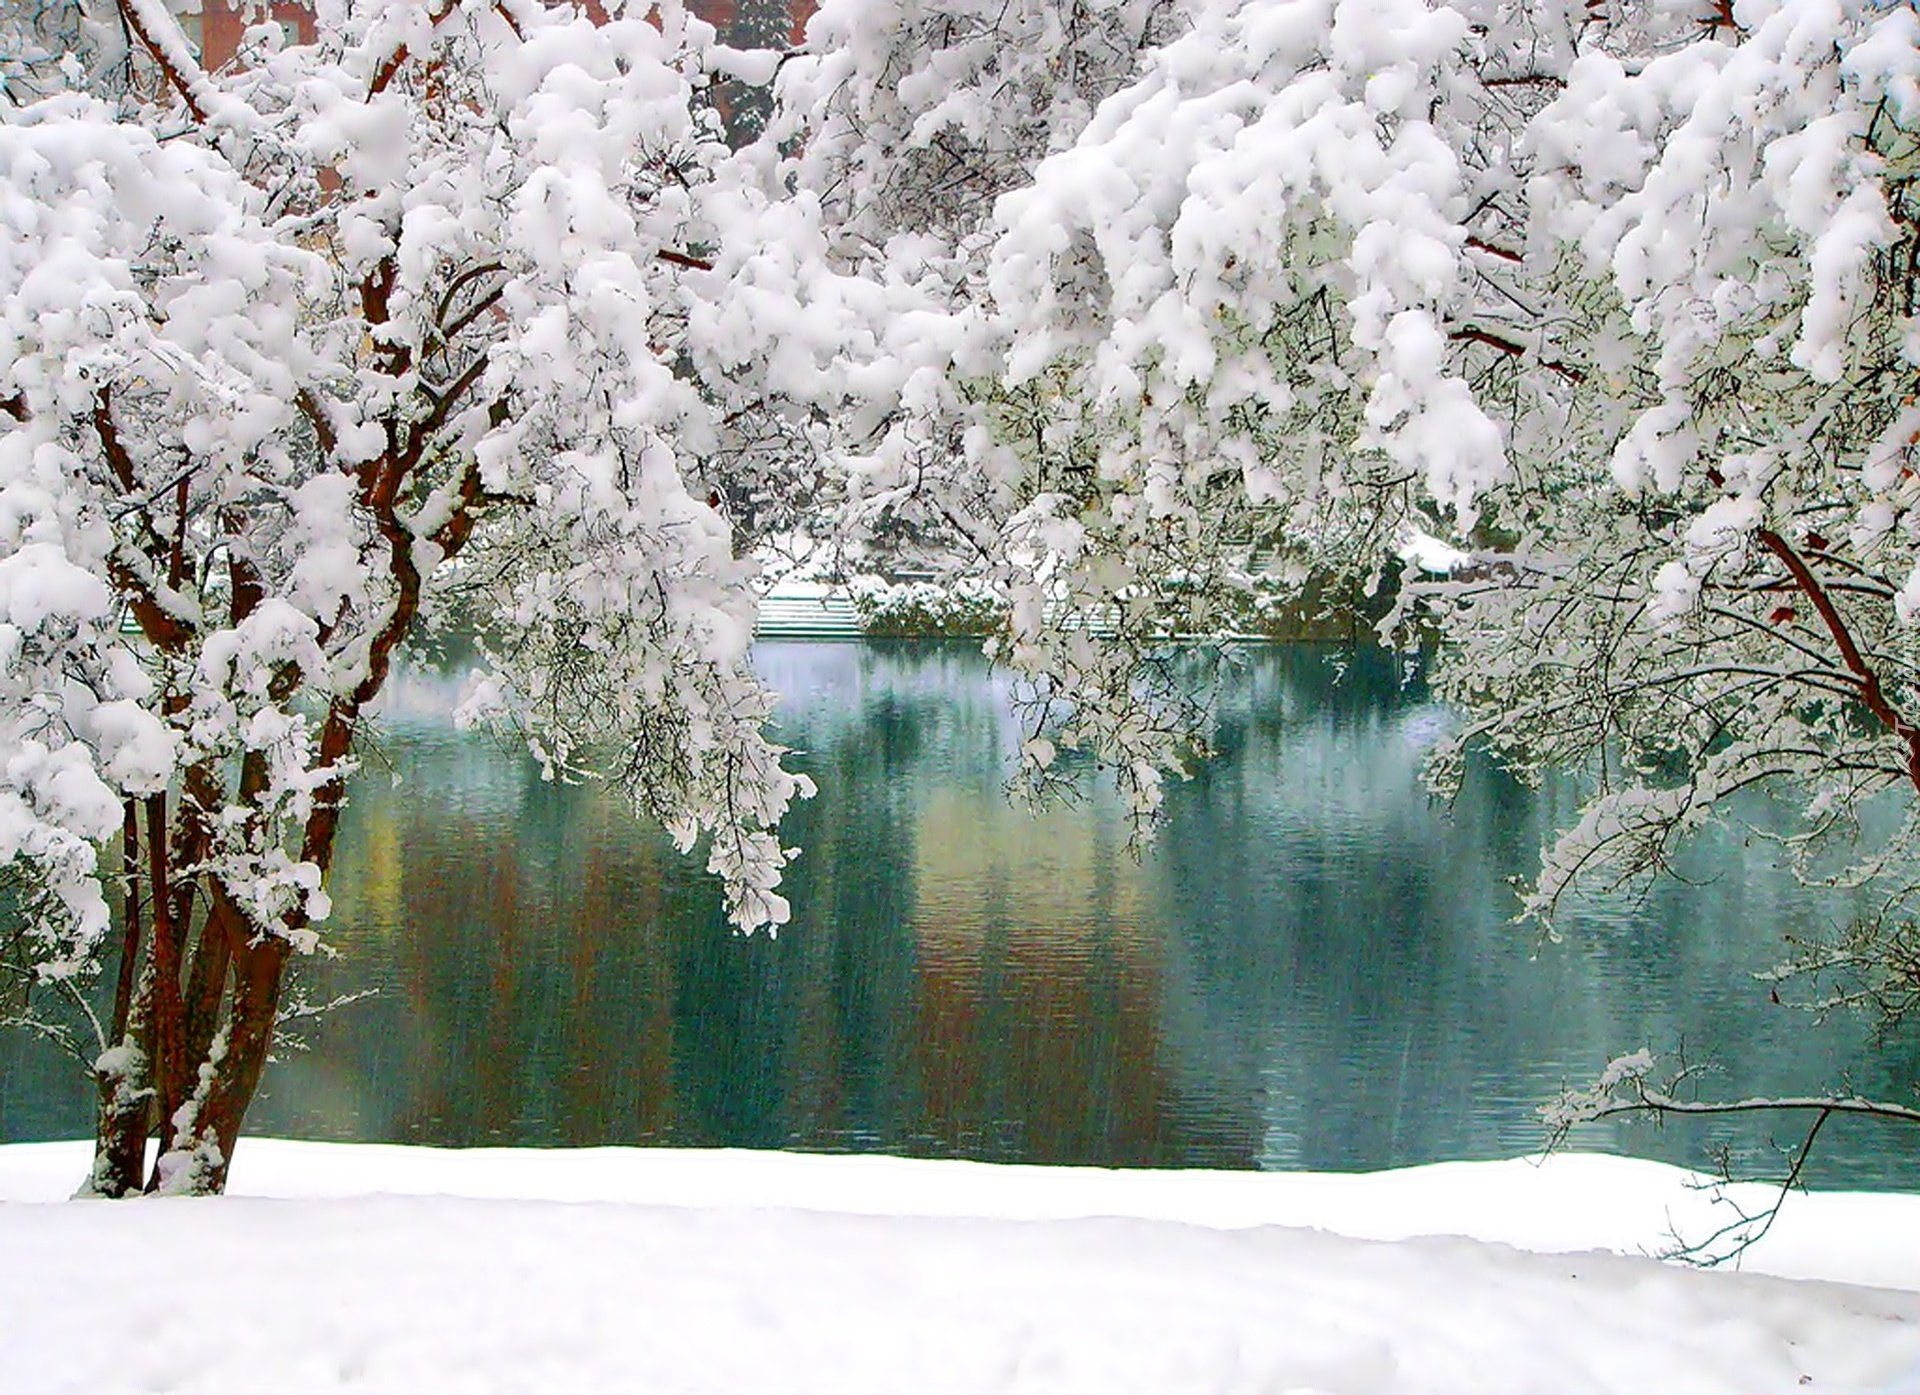 Тишина падающего снега. Снег. Окно с зимним пейзажем. Красивые уголки природы зимой. Зима тишина красота.